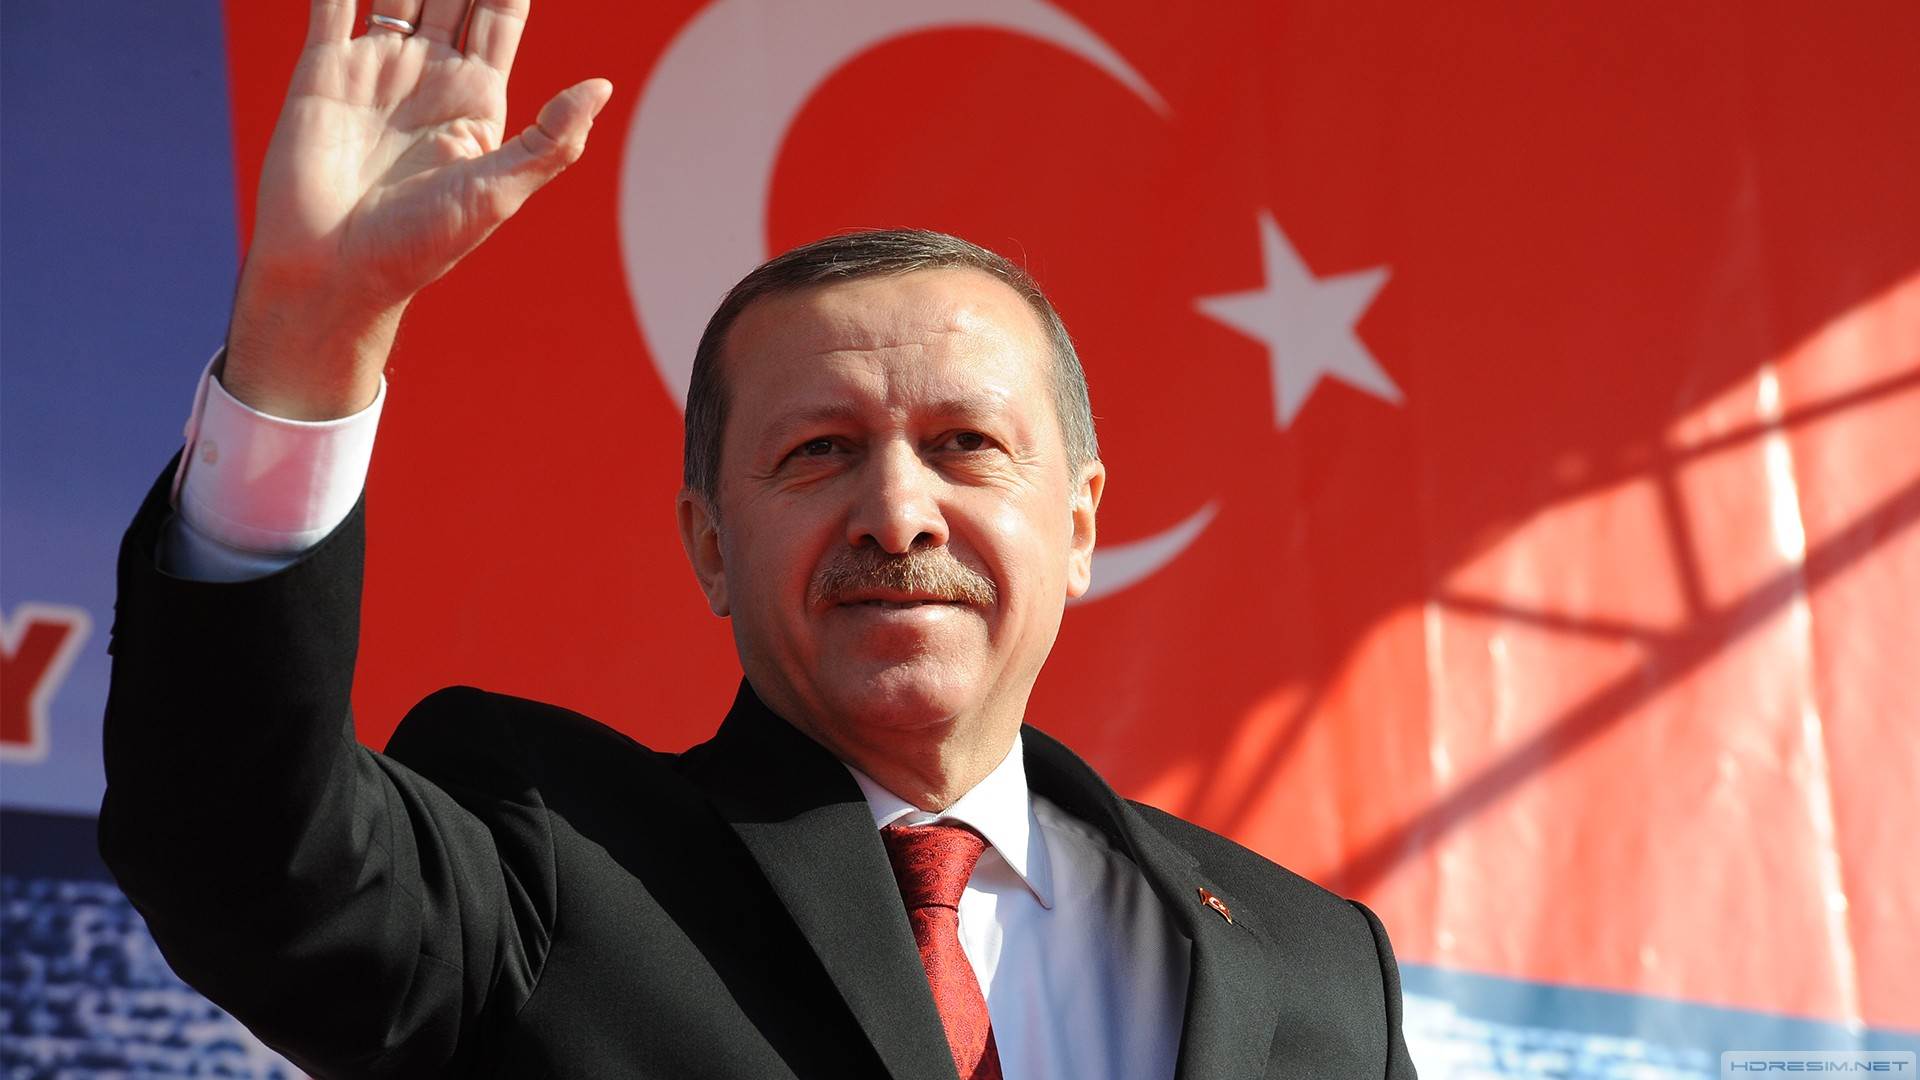 نبوءة أردوغان المحاولة الانقلابية ستجعله أقوى